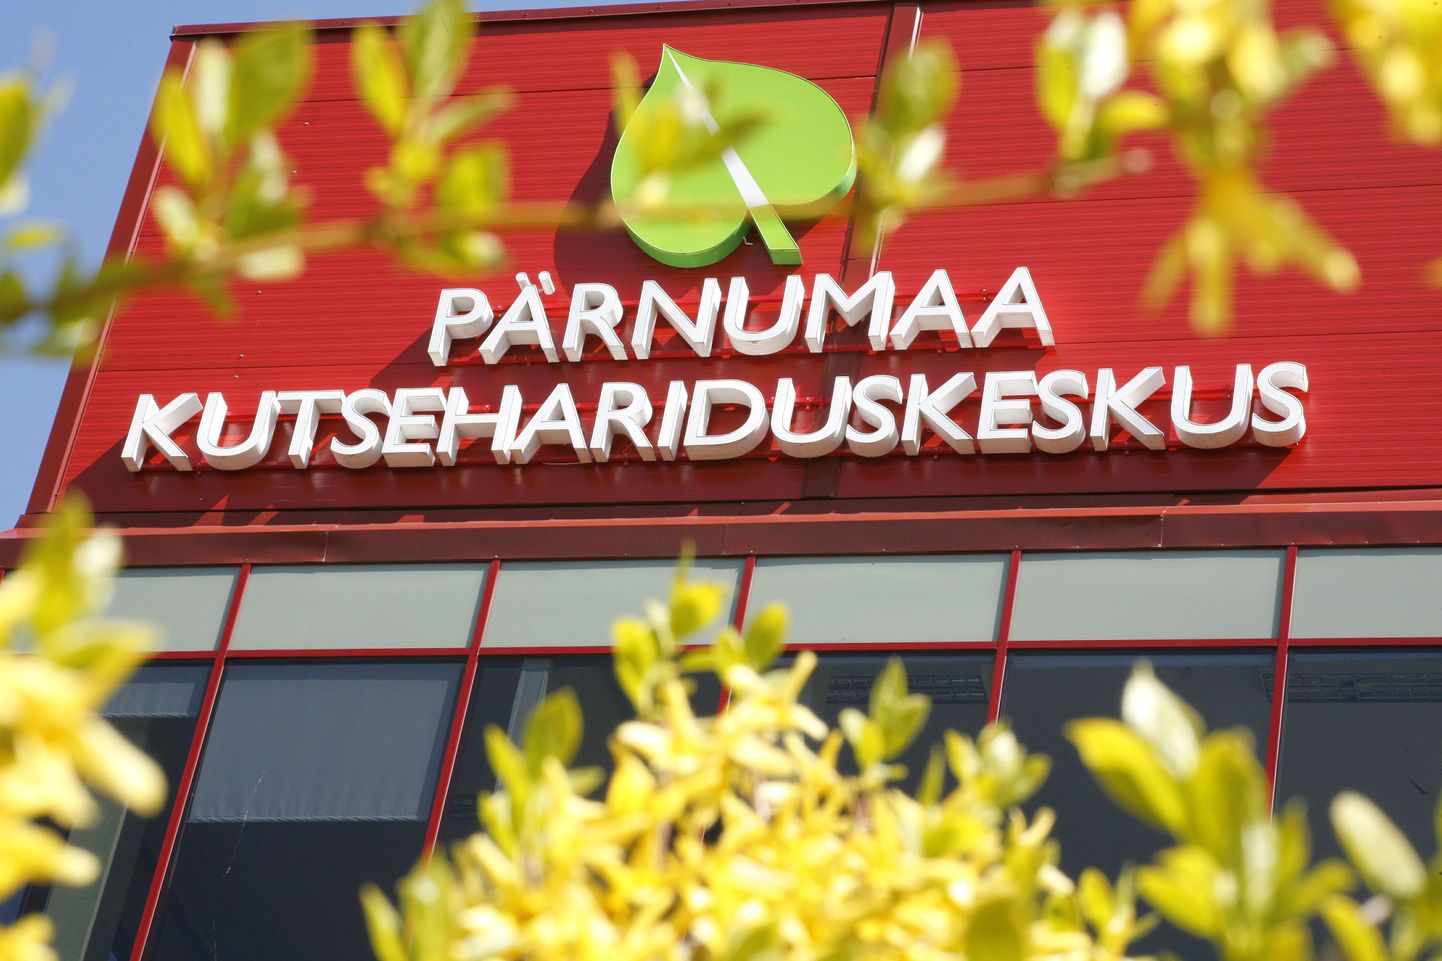 Pärnumaa Kutsehariduskeskuses toimub esimene innovatsioonikohvik KEIK teemal "Tervis ja heaolu" sel neljapäeval.